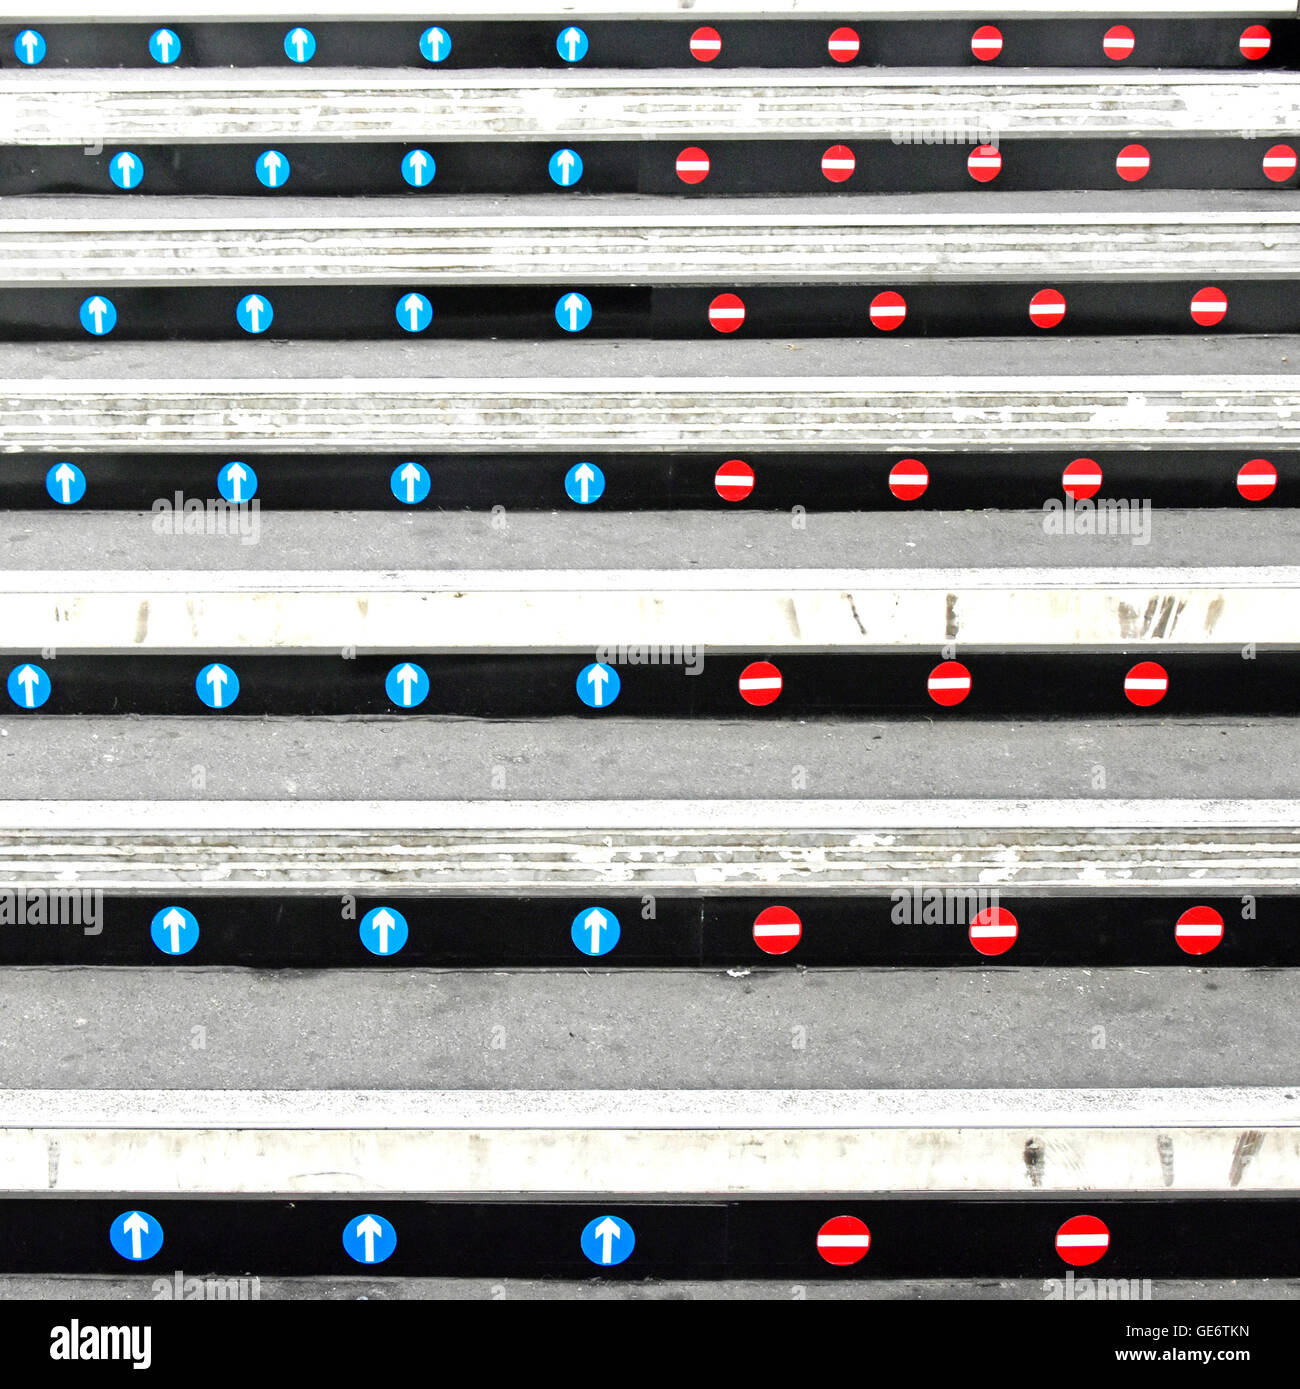 Adesivi sui montanti della stazione ferroviaria di scala della piattaforma per indicare la corretta su & giù accesso a migliorare le condizioni di sicurezza per i passeggeri del treno Foto Stock